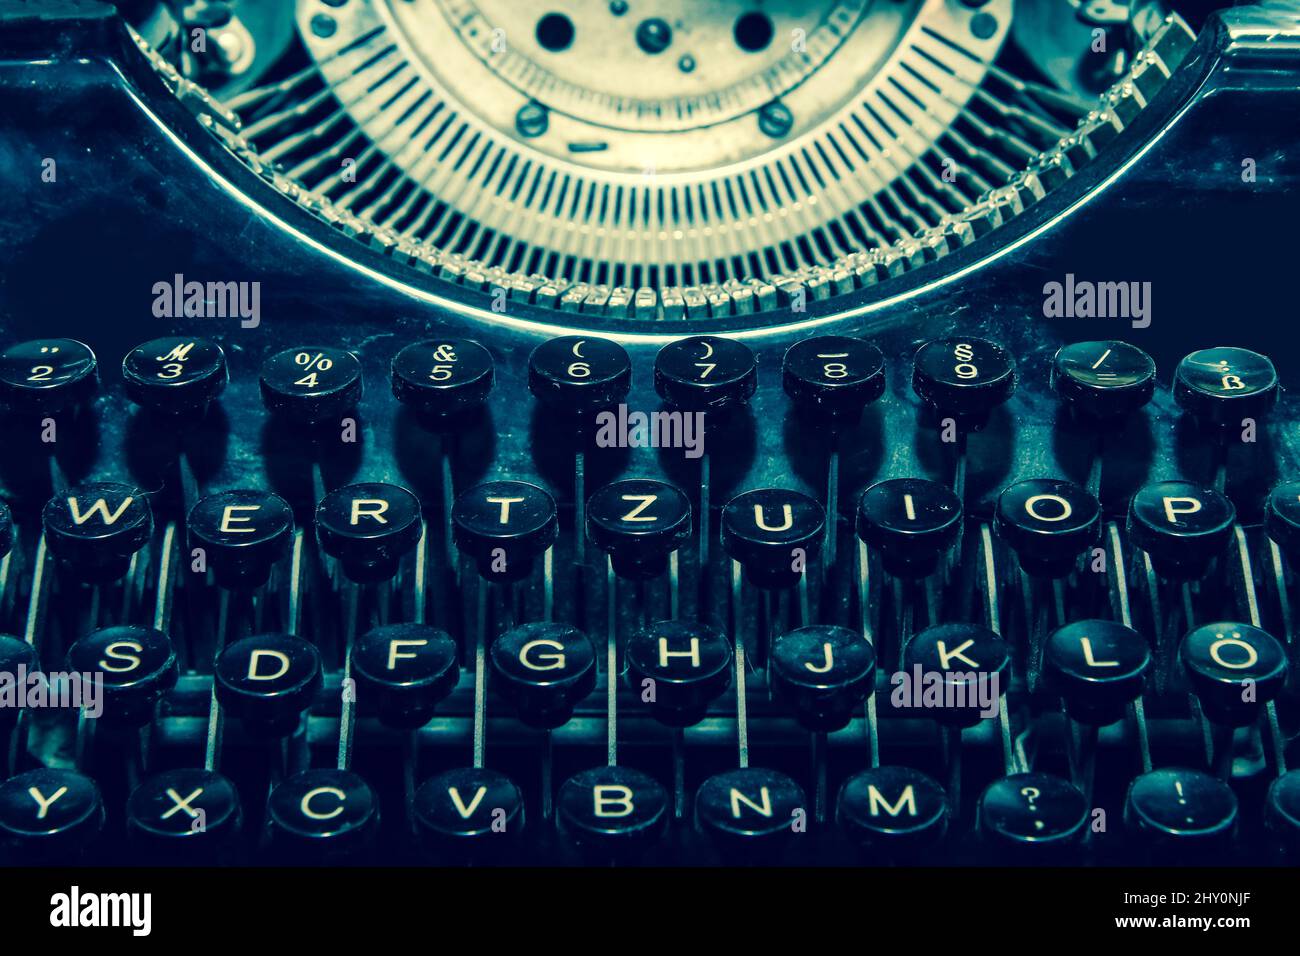 L'image détaillée de l'ancienne machine à écrire mécanique rétro dans des couleurs rétro décolorées. Banque D'Images